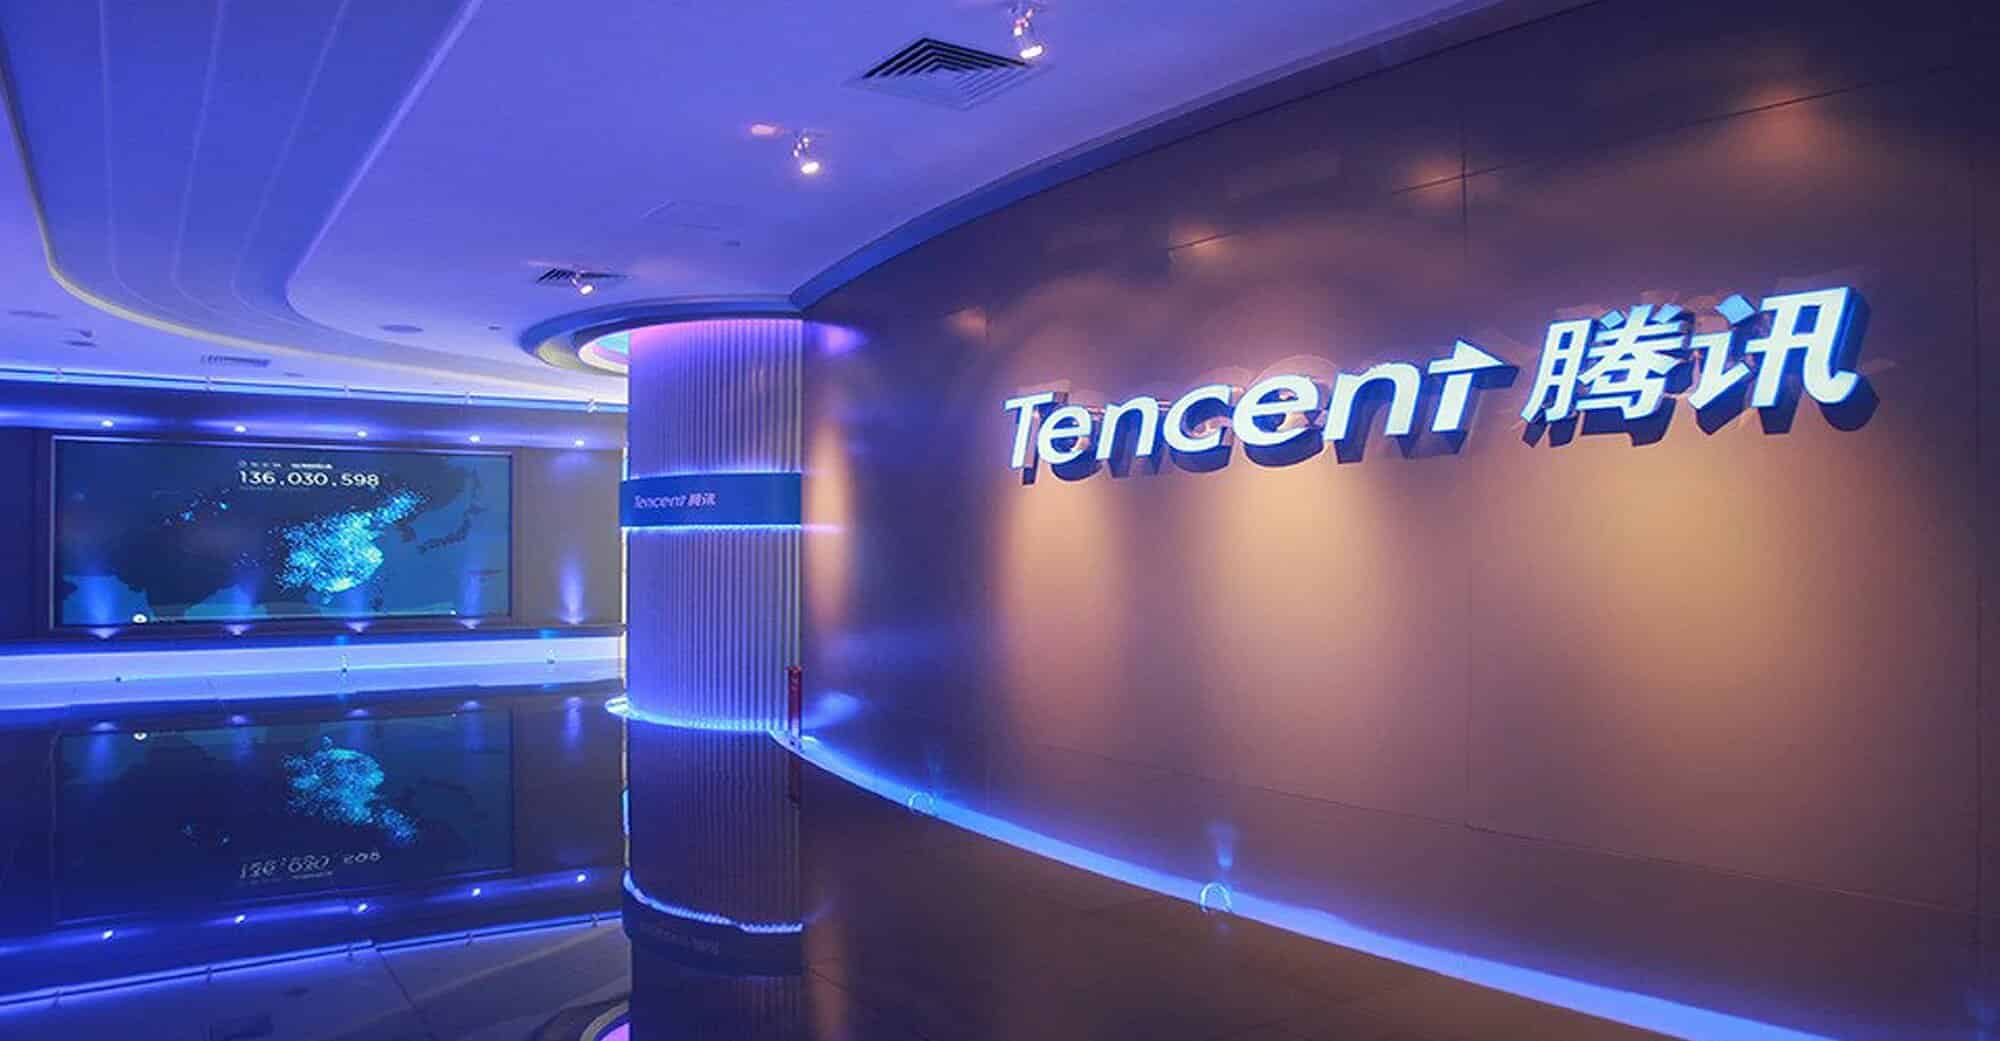 Un couloir de Tencent joliment illuminé de bleu